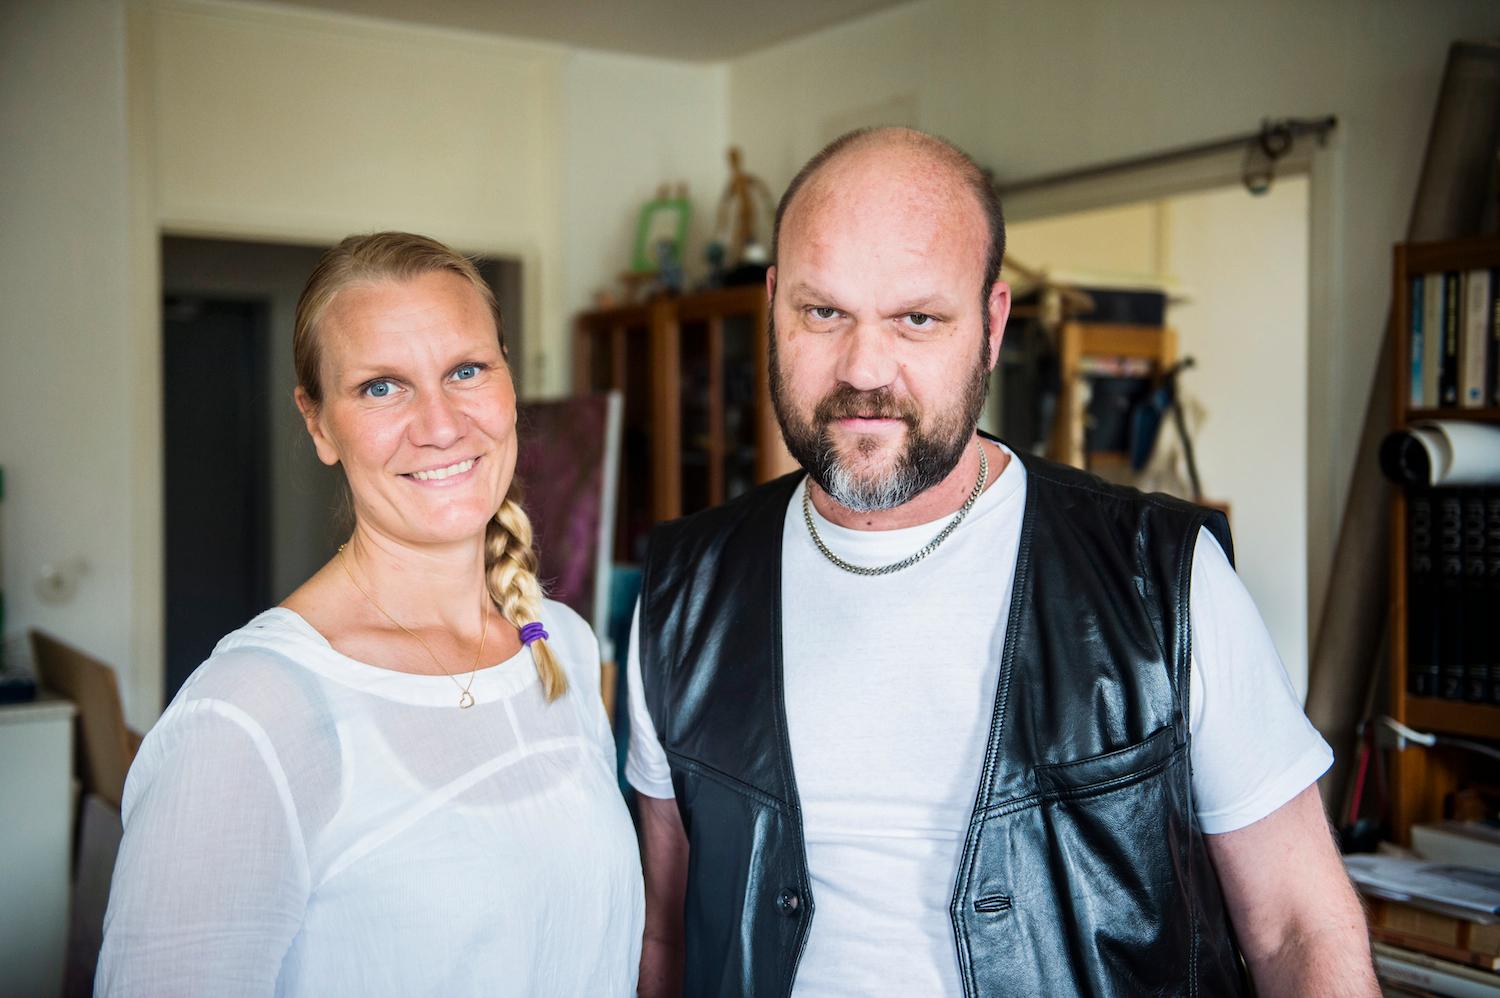 "Vi träffas ofta och har väldigt roligt tillsammans. Jag tycker att det är kul att vara med min brorsa. Han har nära till skratt och har en fantastiskt humor", säger Åsa Geuken om sin bror Mats, 47, här hemma i hans lägenhet.